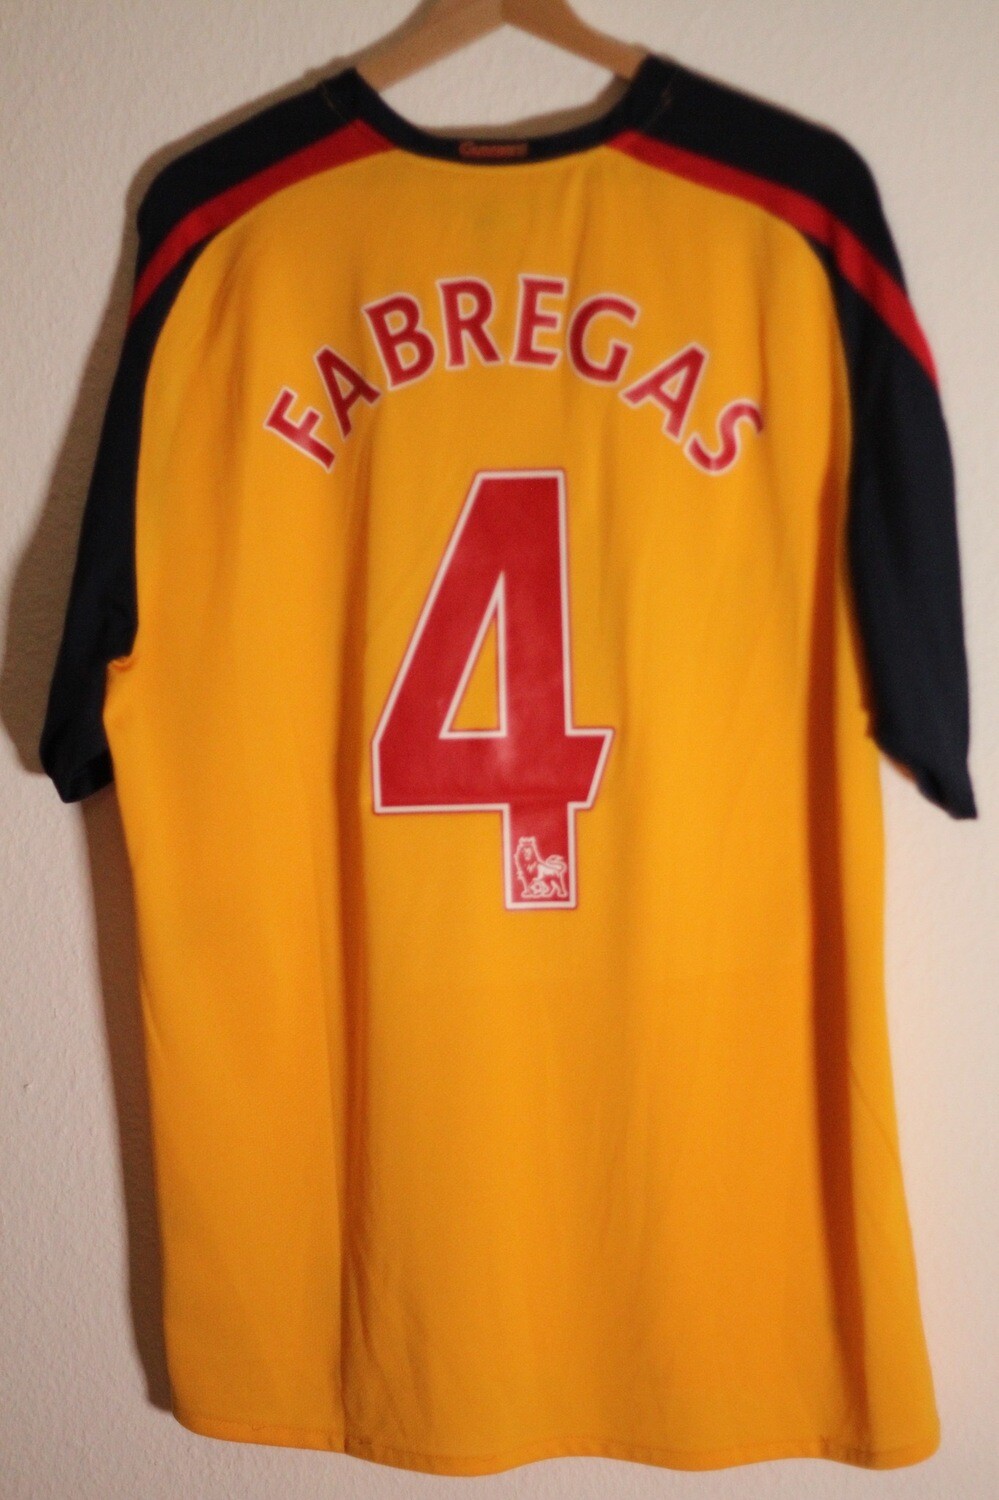 Arsenal 2008/09 Away #4 FABREGAS